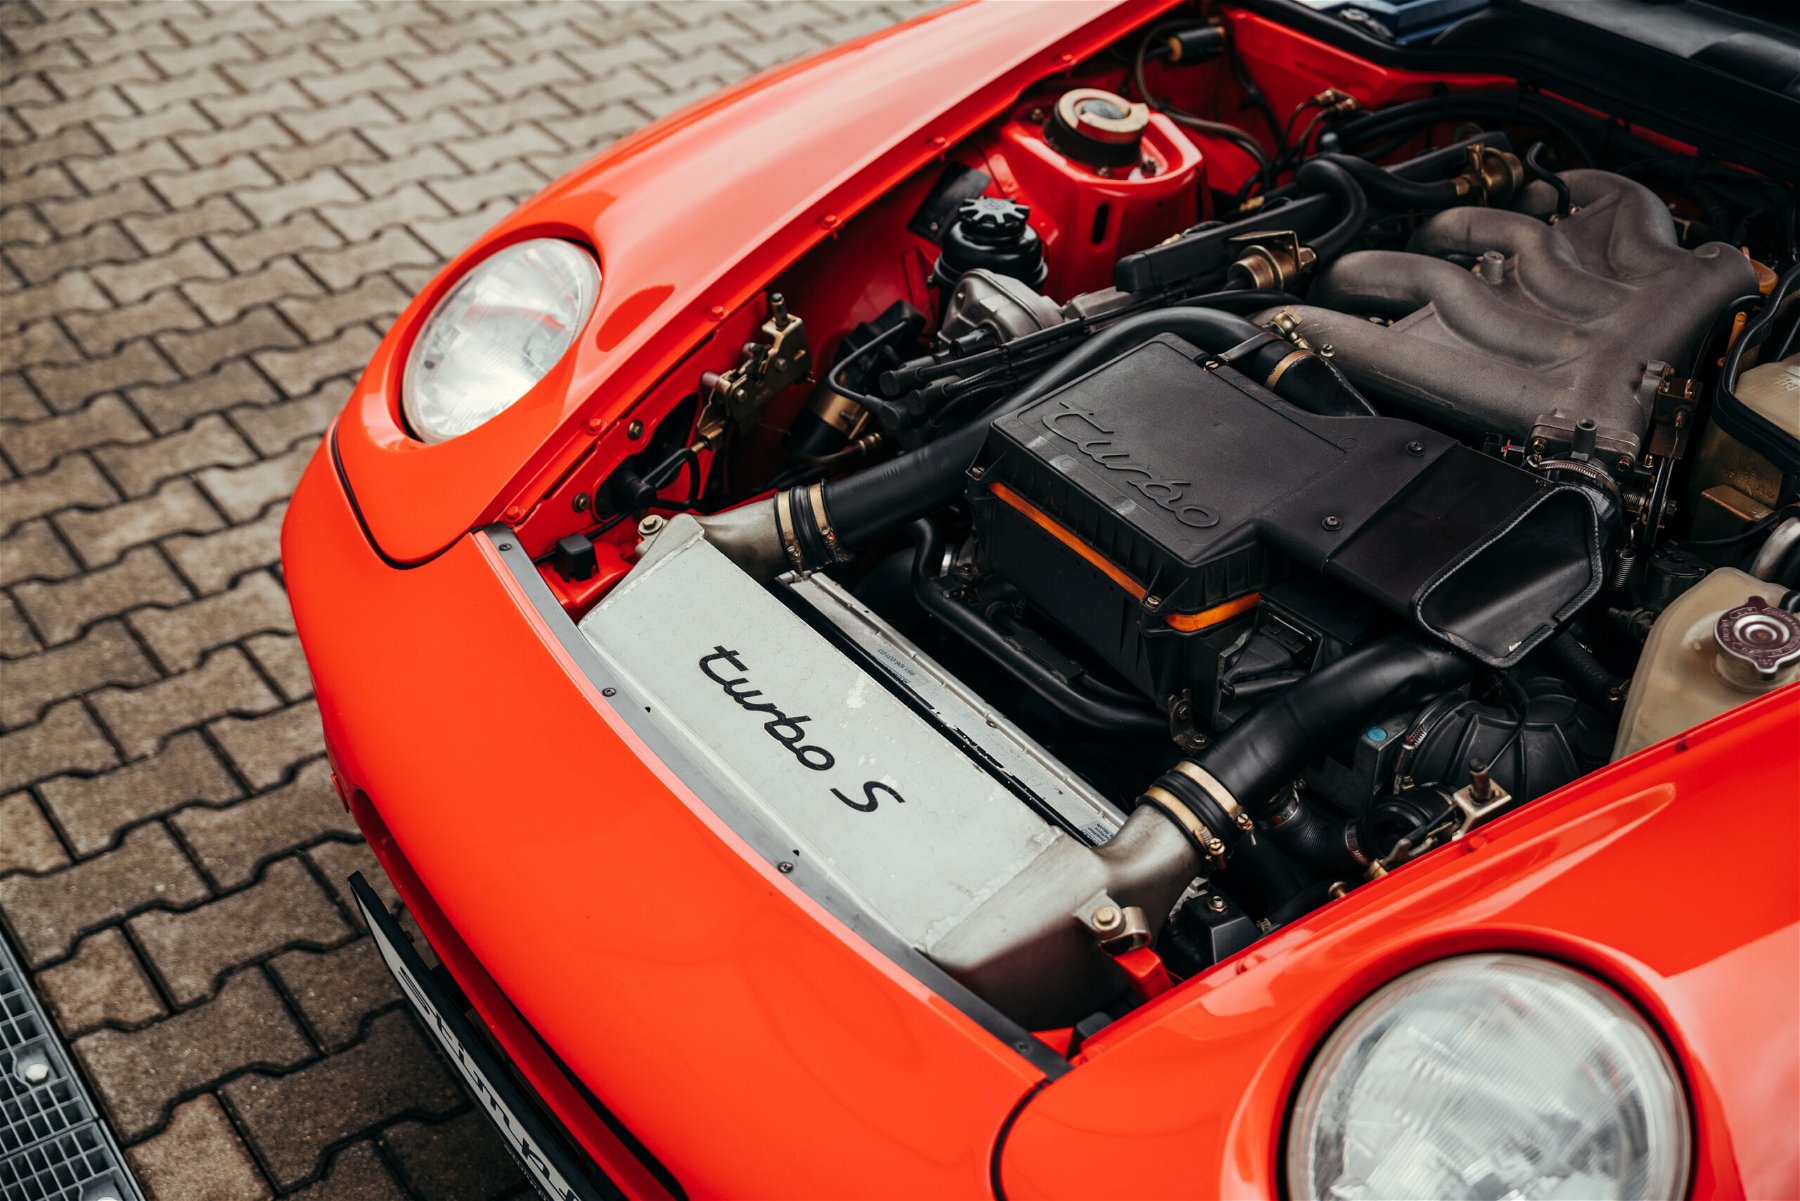 Porsche 968 Turbo S engine bay